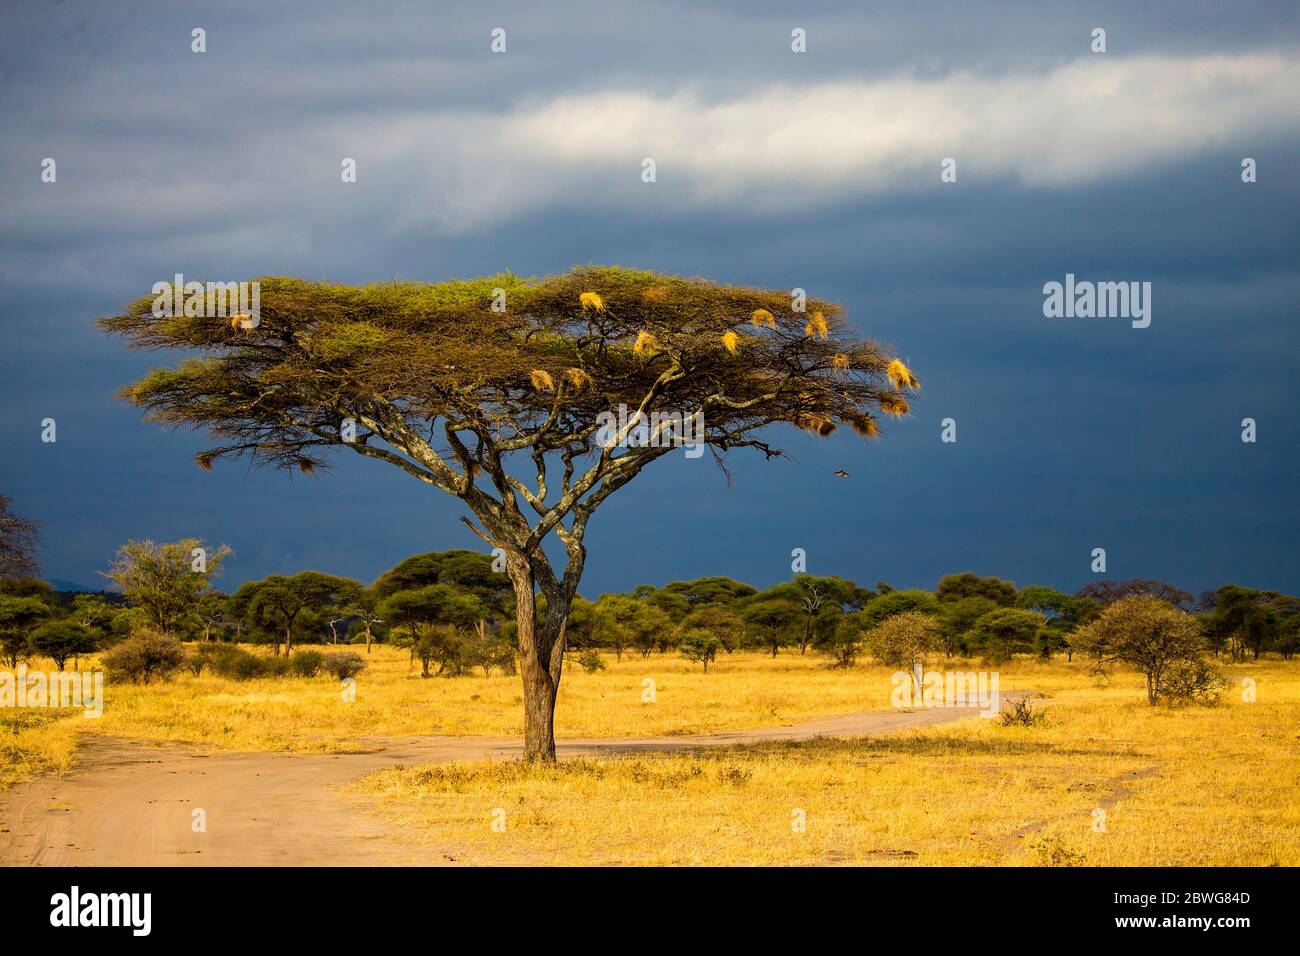 Paysage de savane avant la tempête avec arbre à épines ombrelles (Acacia tortilis sous-espèce heteroacantha) en premier plan, Parc national de Tarangire, Tanzanie, Afrique Banque D'Images